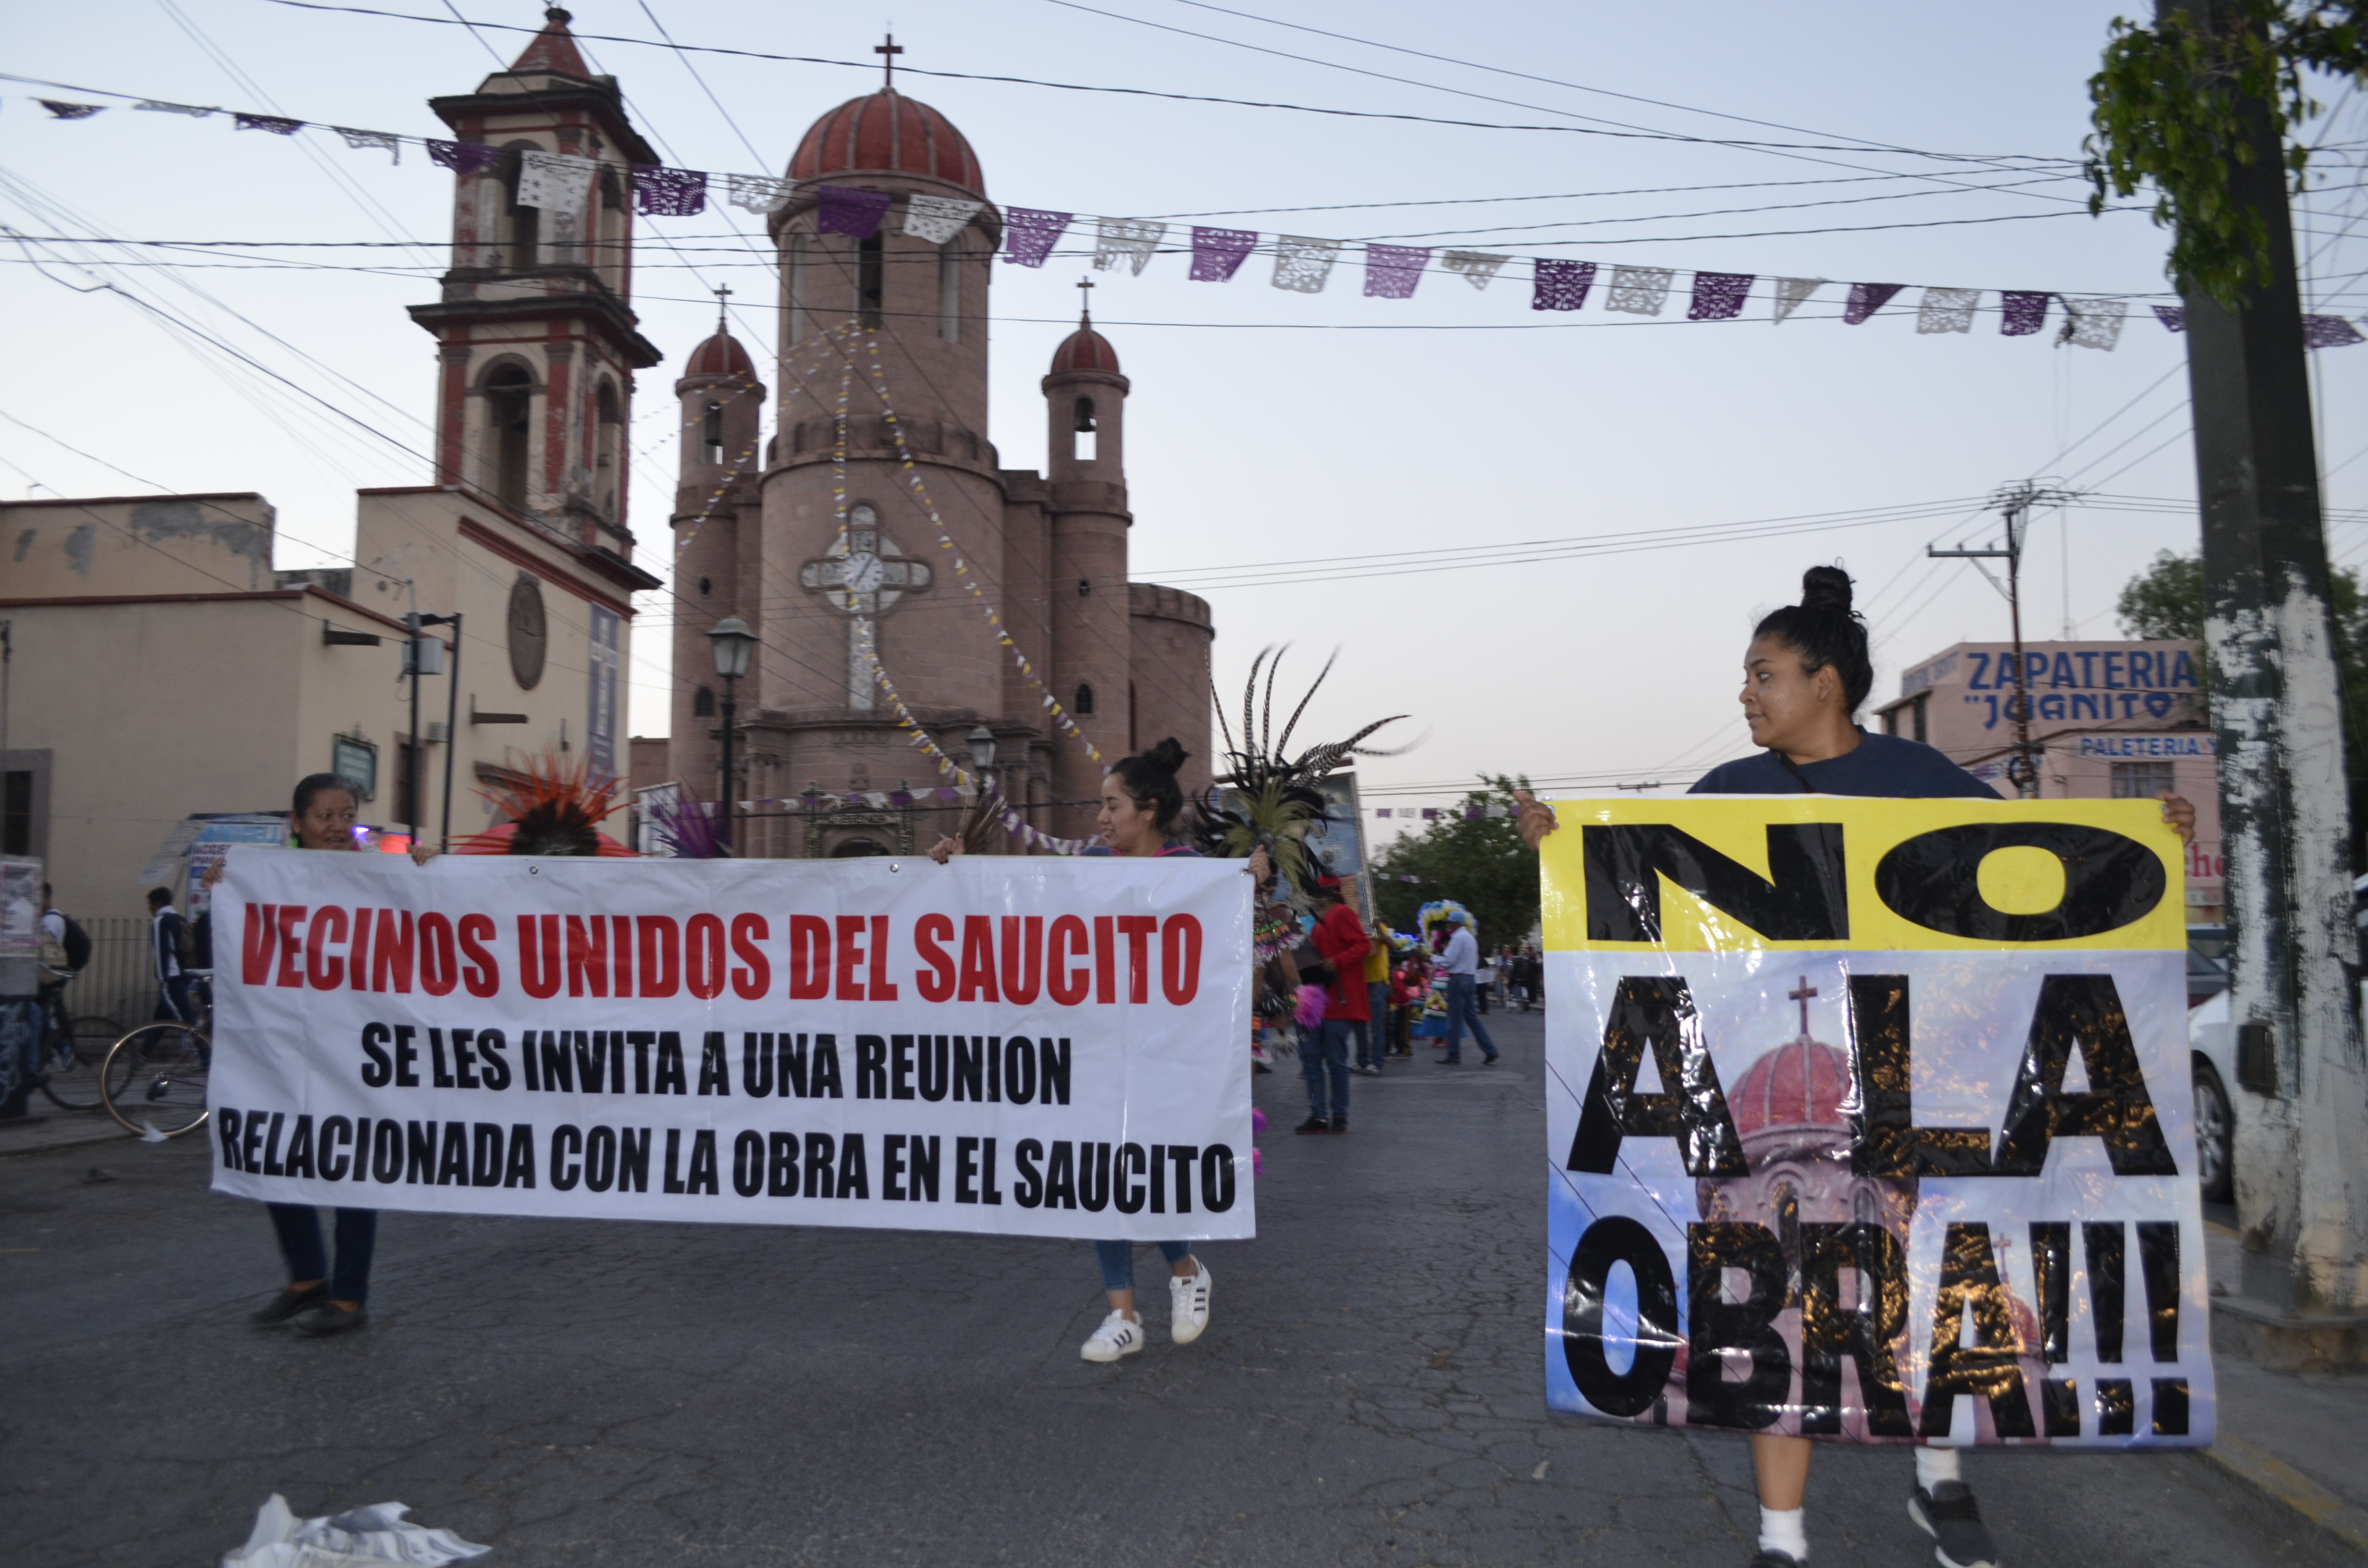  “¡Gallardo entiende, el Saucito no es tu rancho!”: Vecinos en protesta